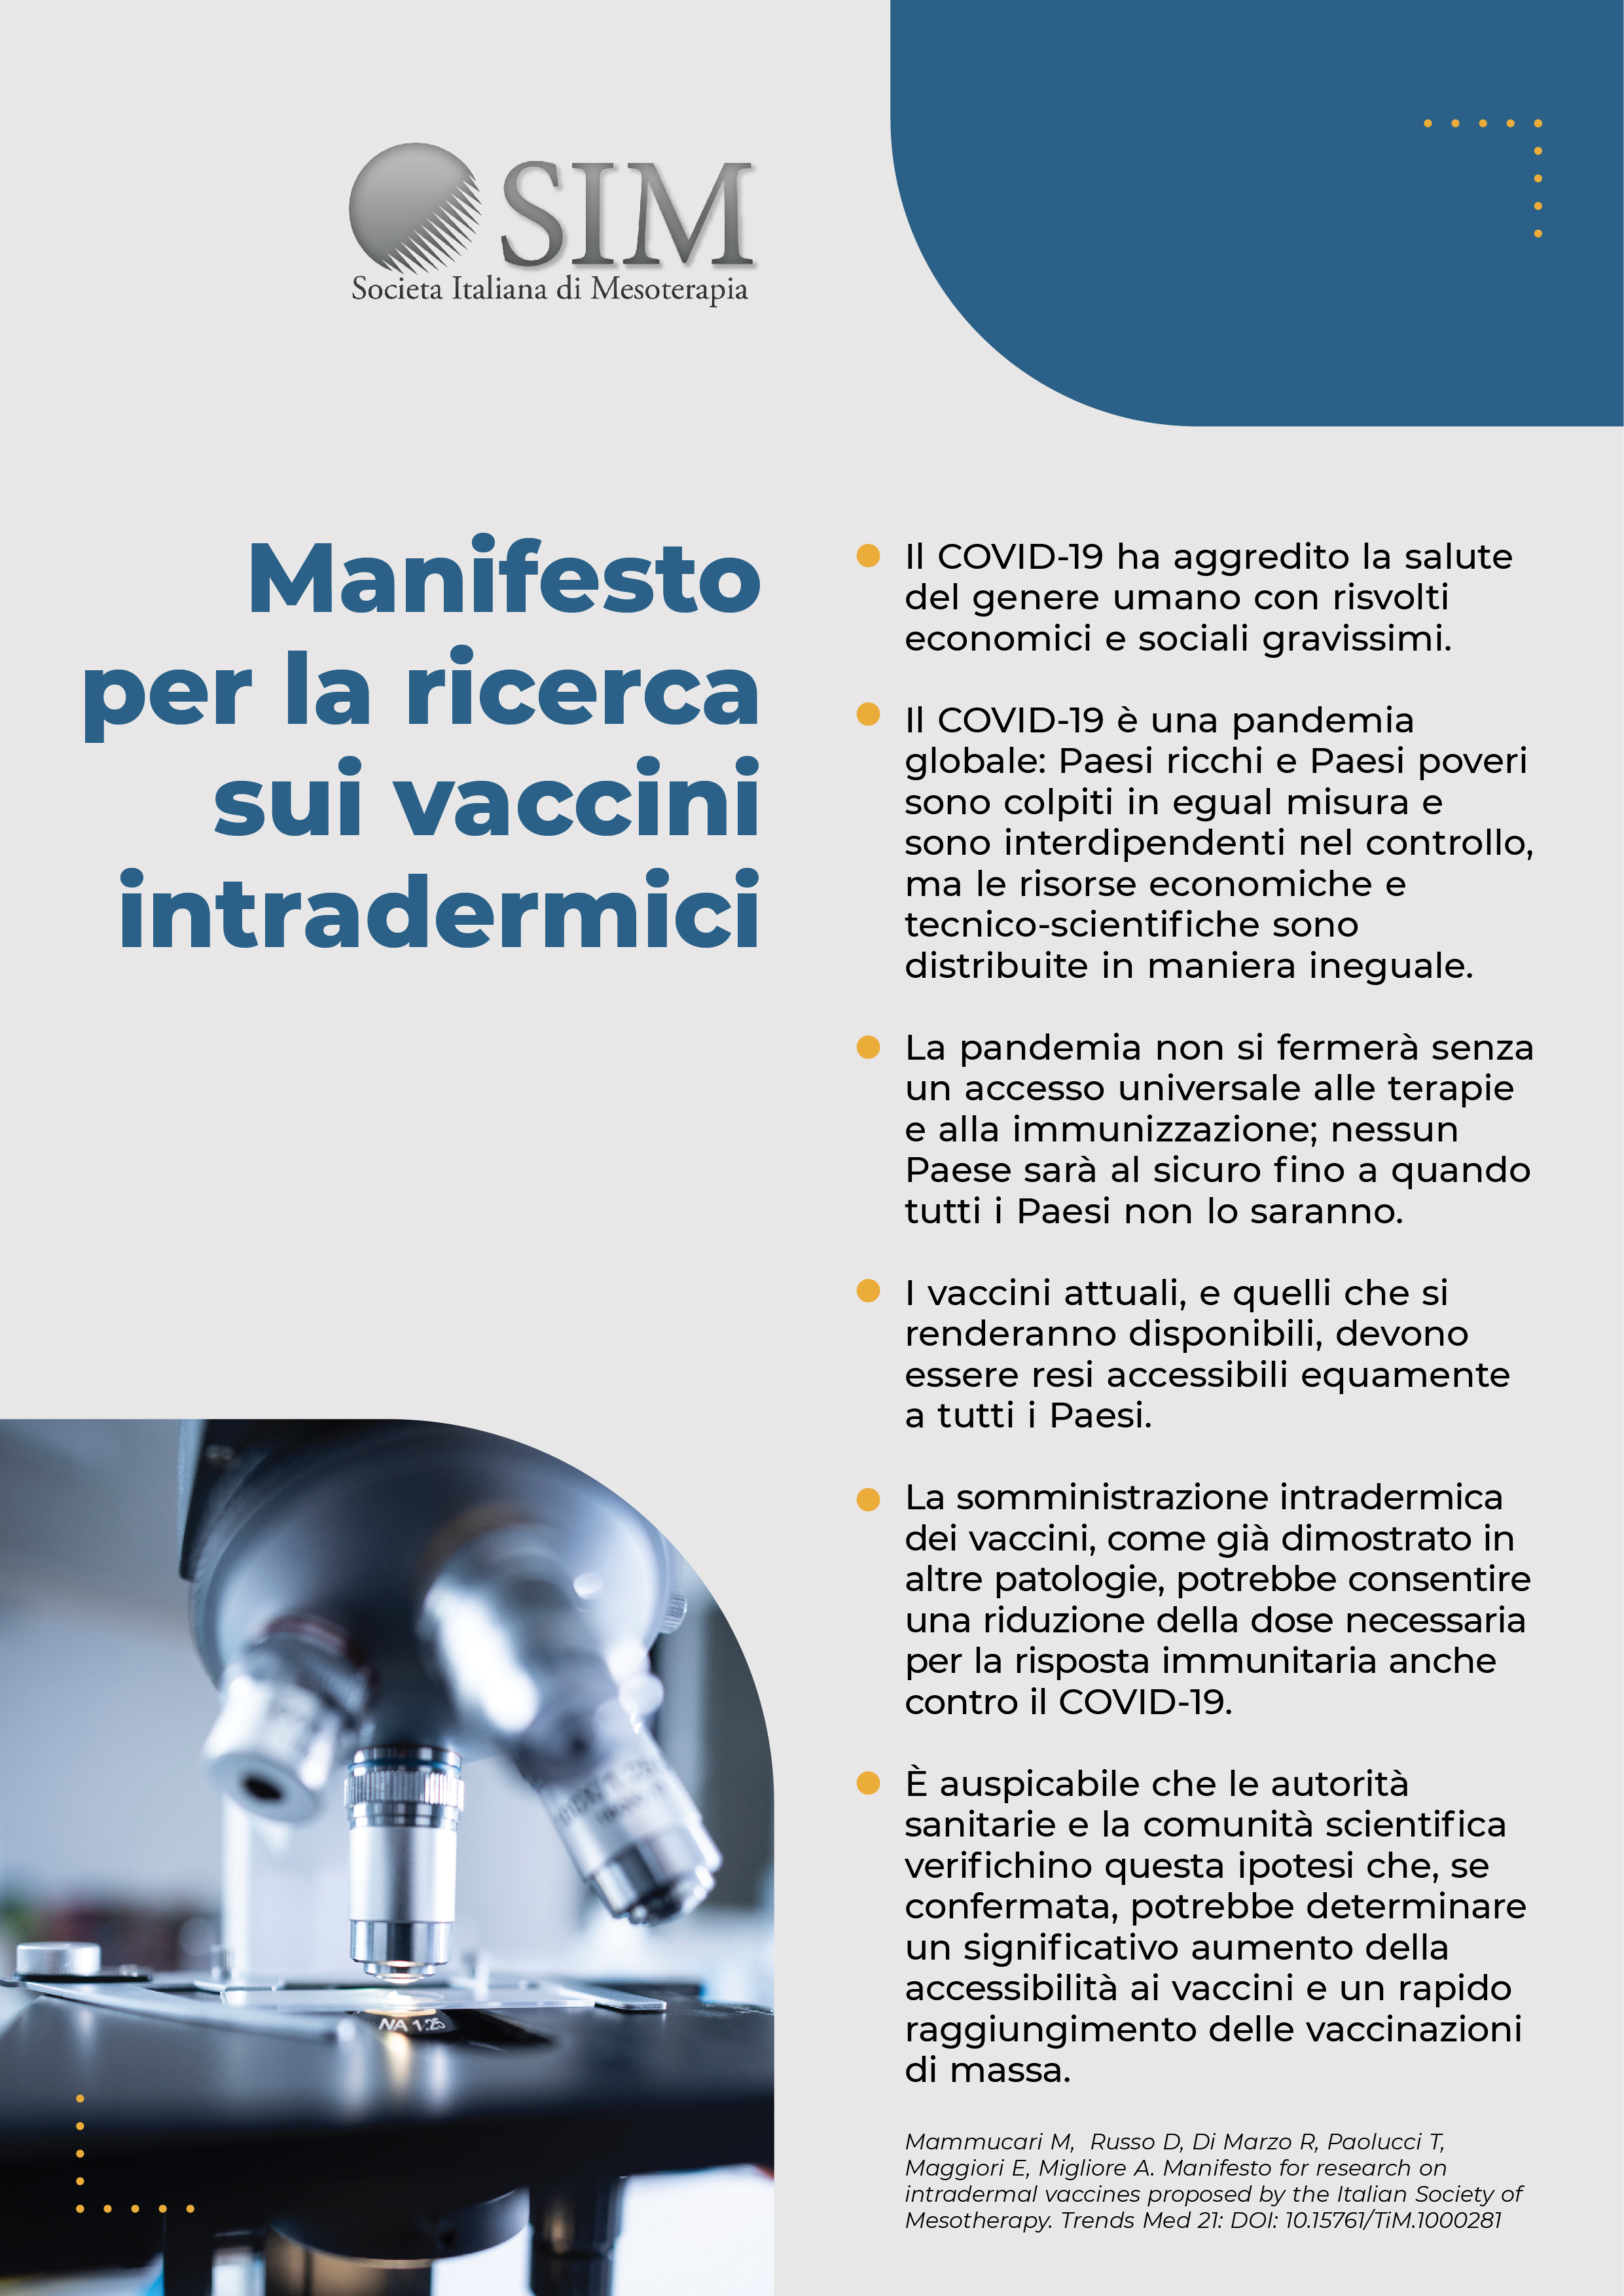 Manifesto per la ricerca sui vaccini intradermici